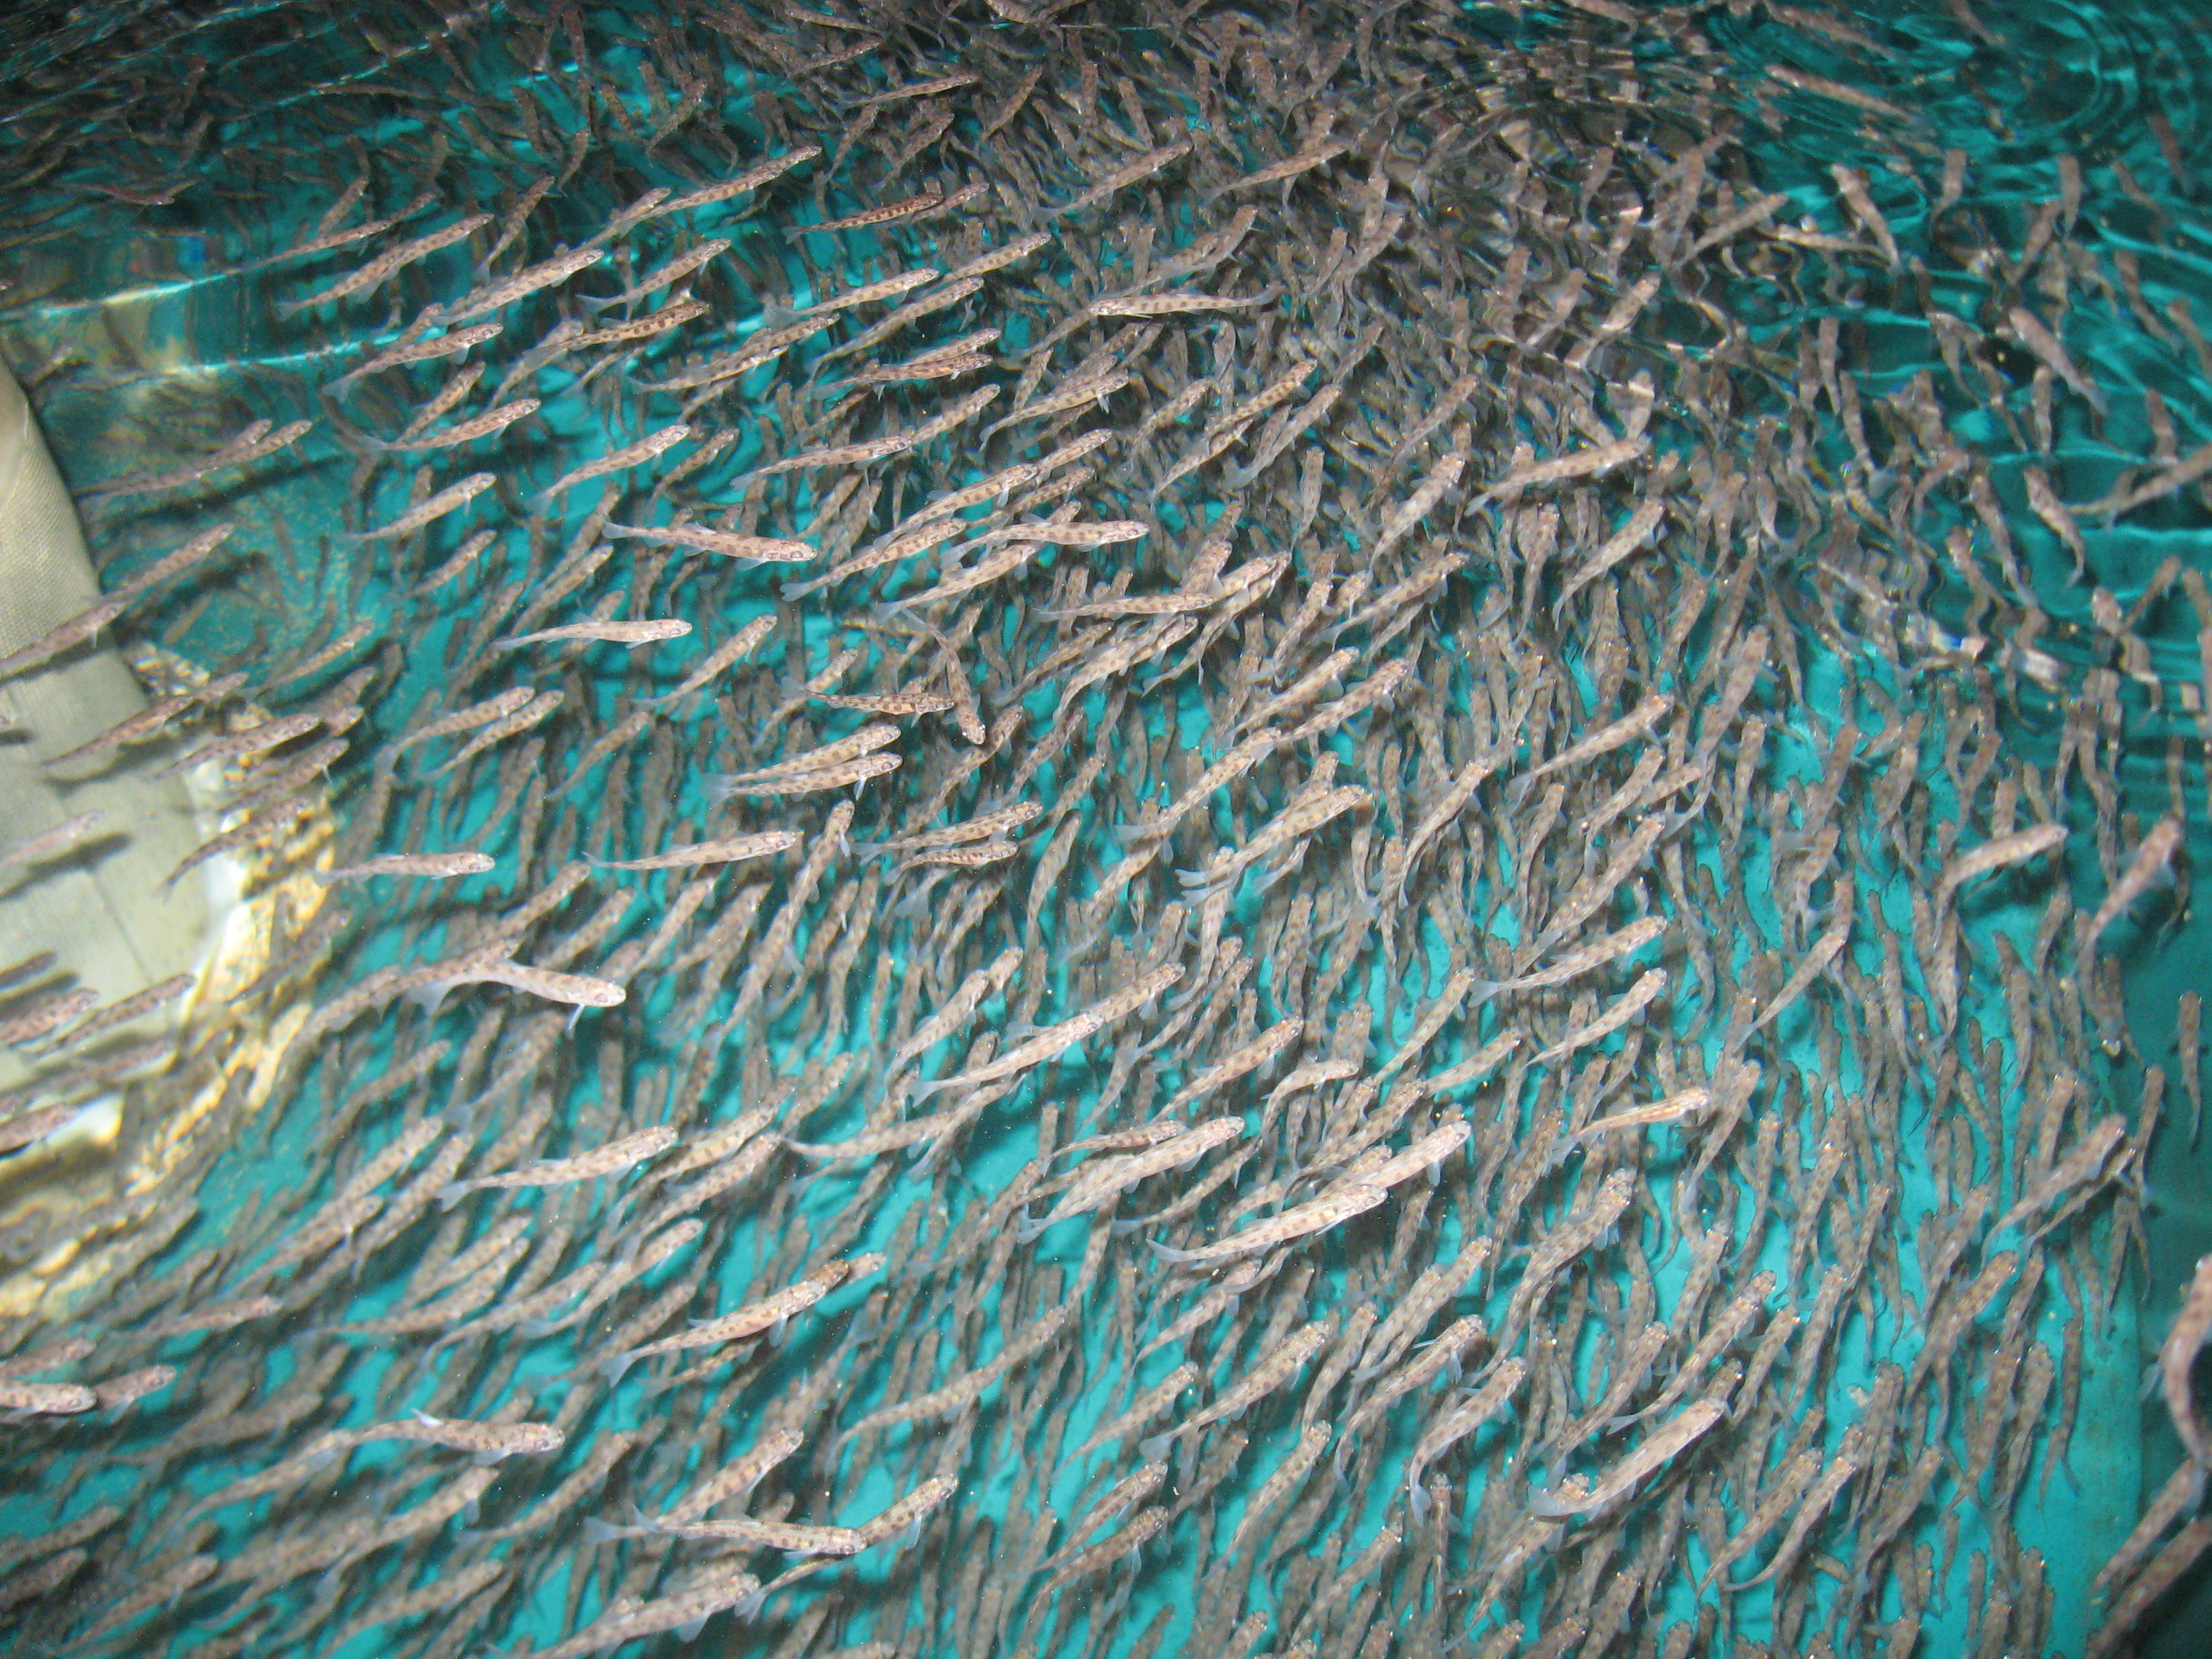 Lake trout fry in a hatchery tank